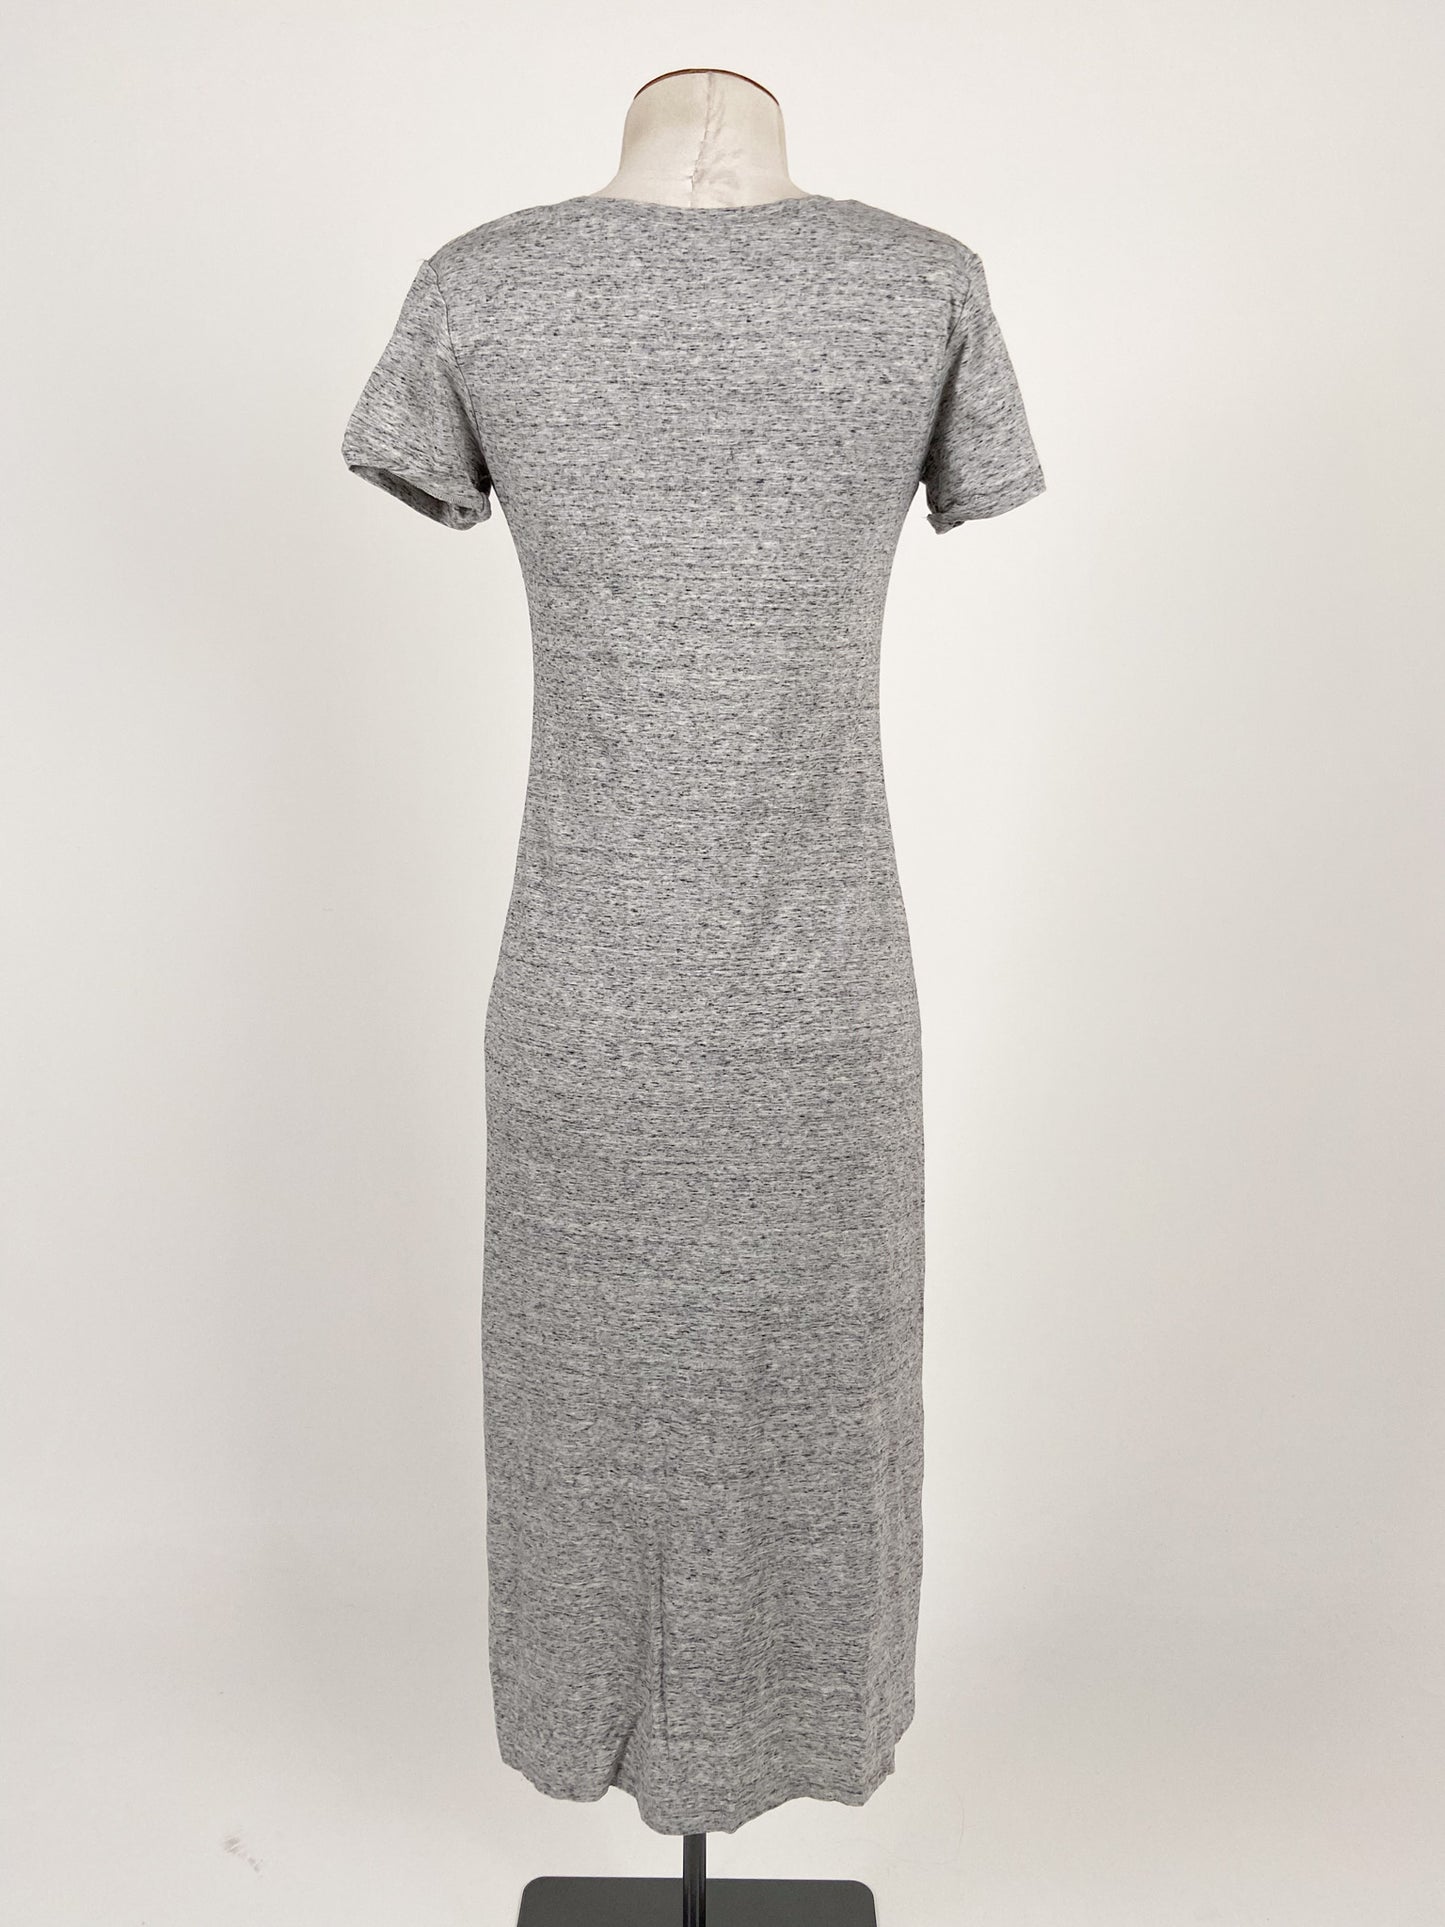 Uniqlo | Grey Casual Dress | Size M